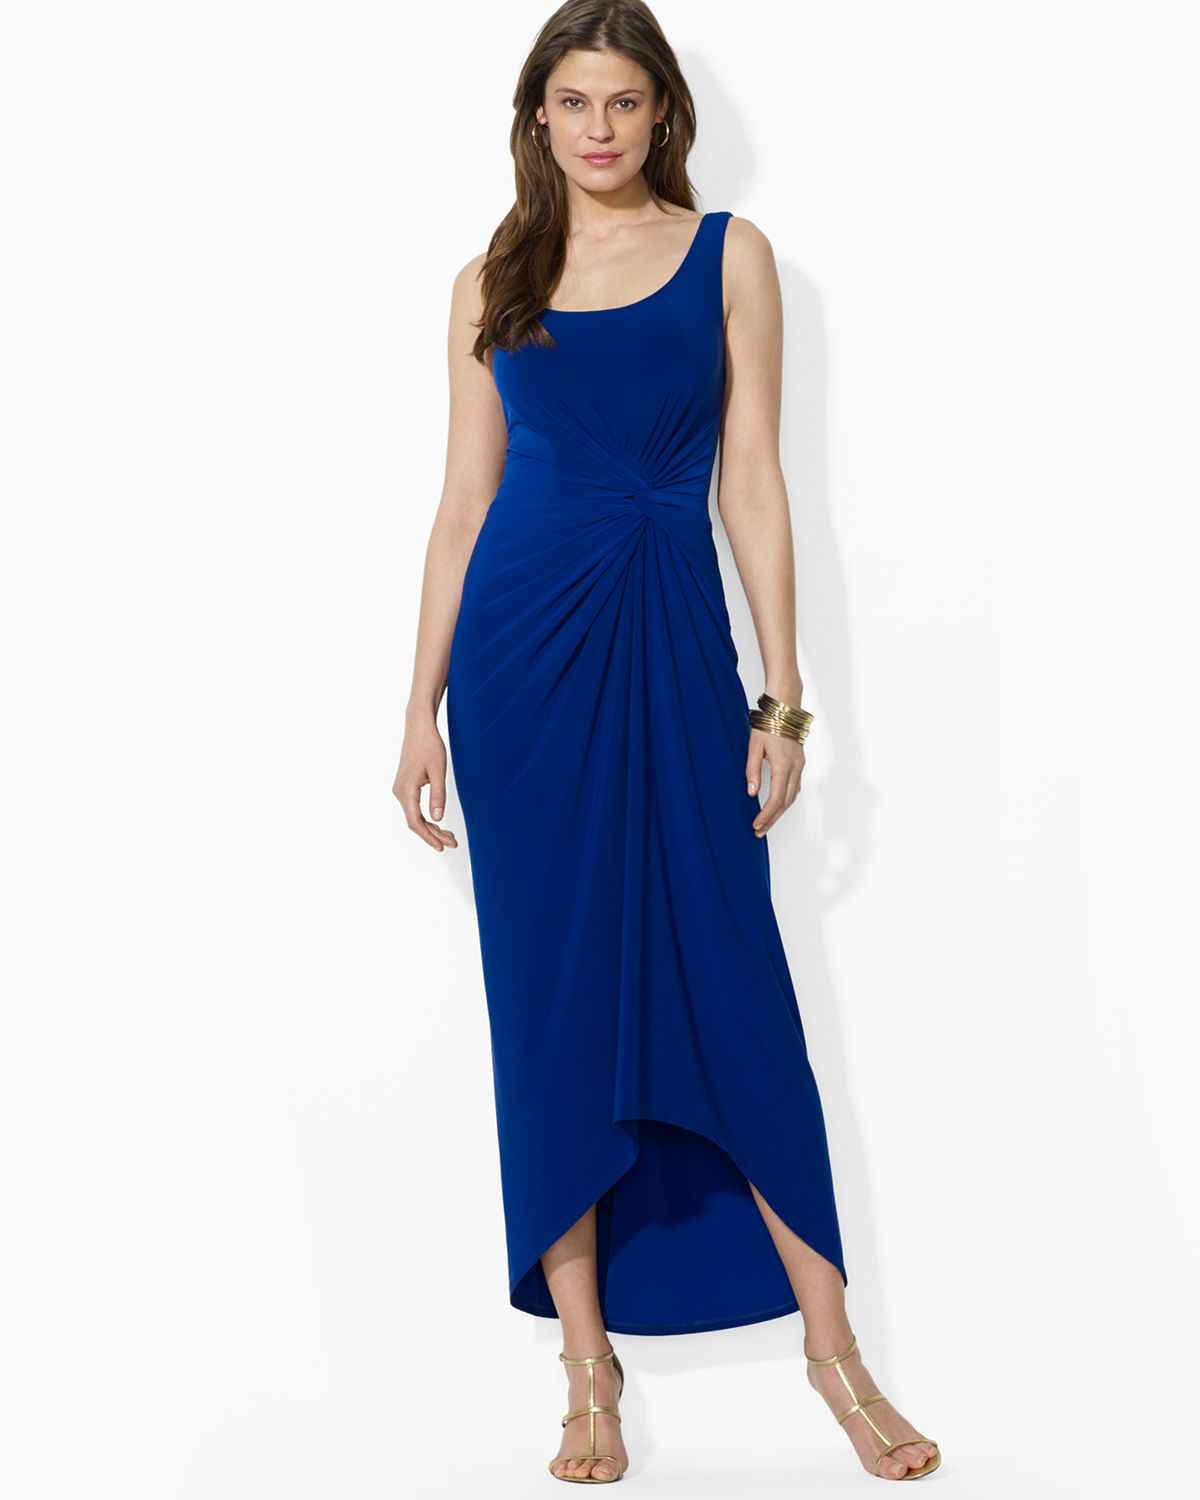 Lyst - Ralph Lauren Lauren Petites Maxi Dress Scoop Neck in Blue